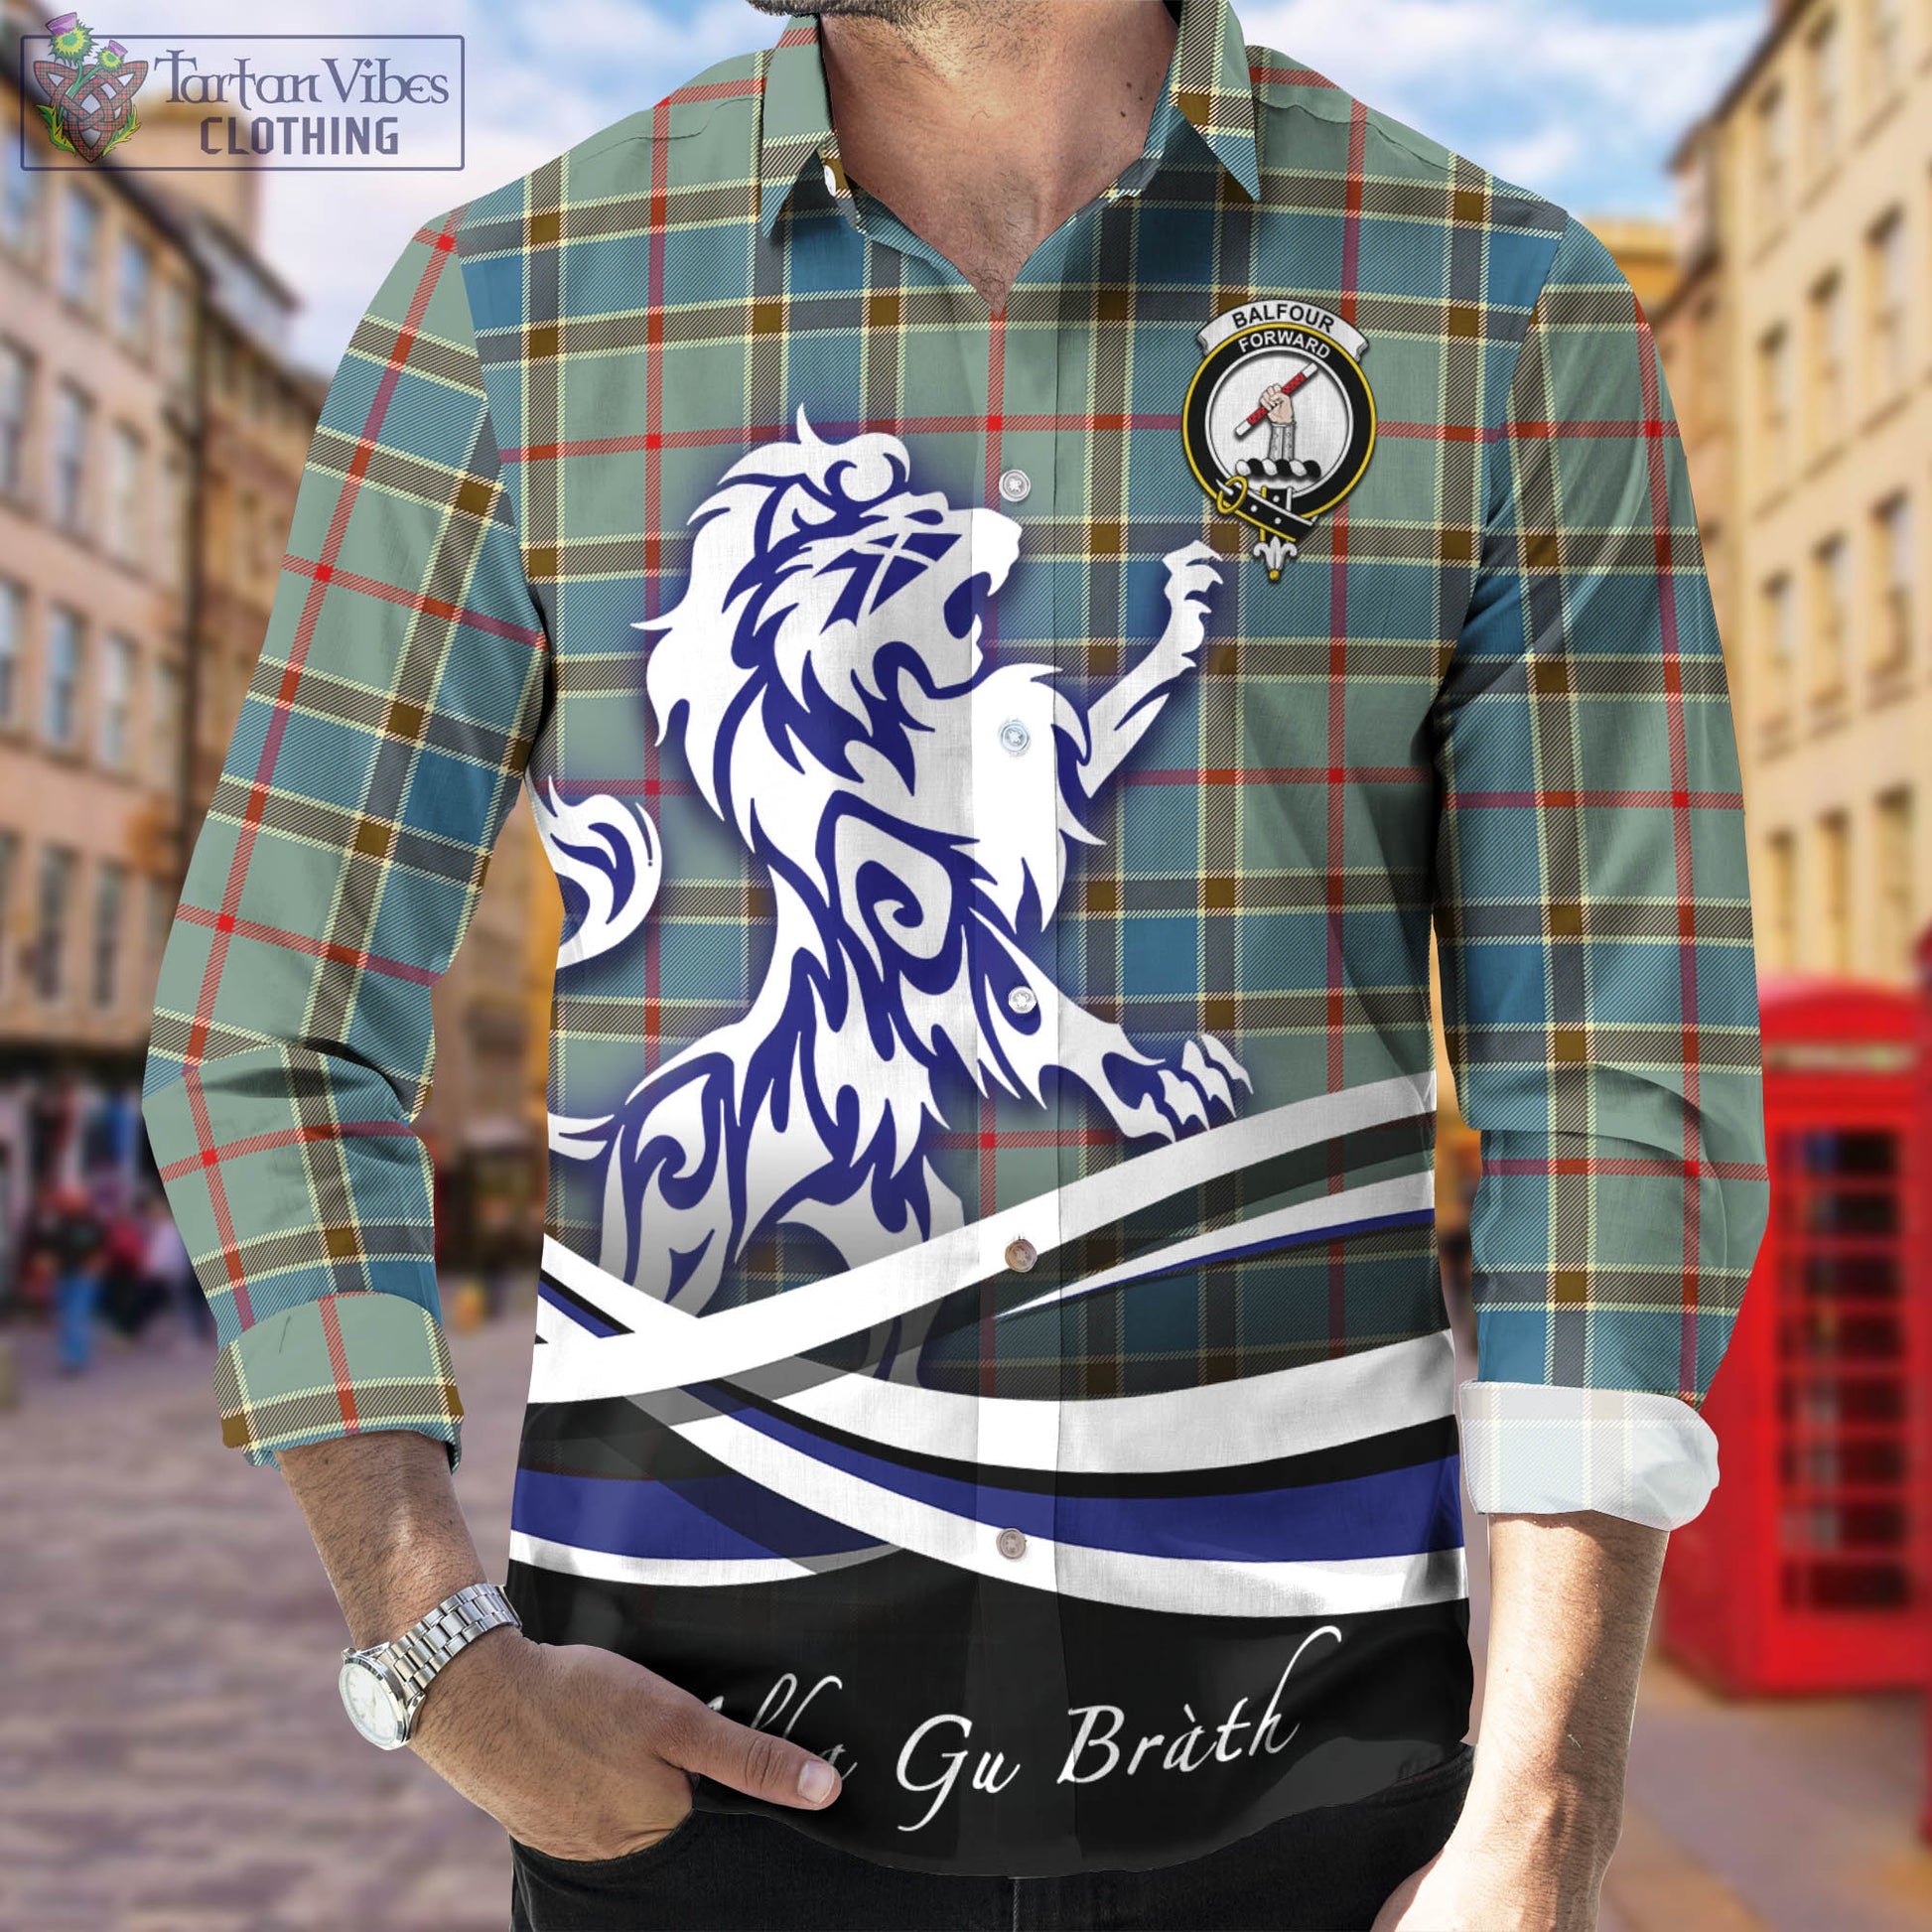 balfour-blue-tartan-long-sleeve-button-up-shirt-with-alba-gu-brath-regal-lion-emblem